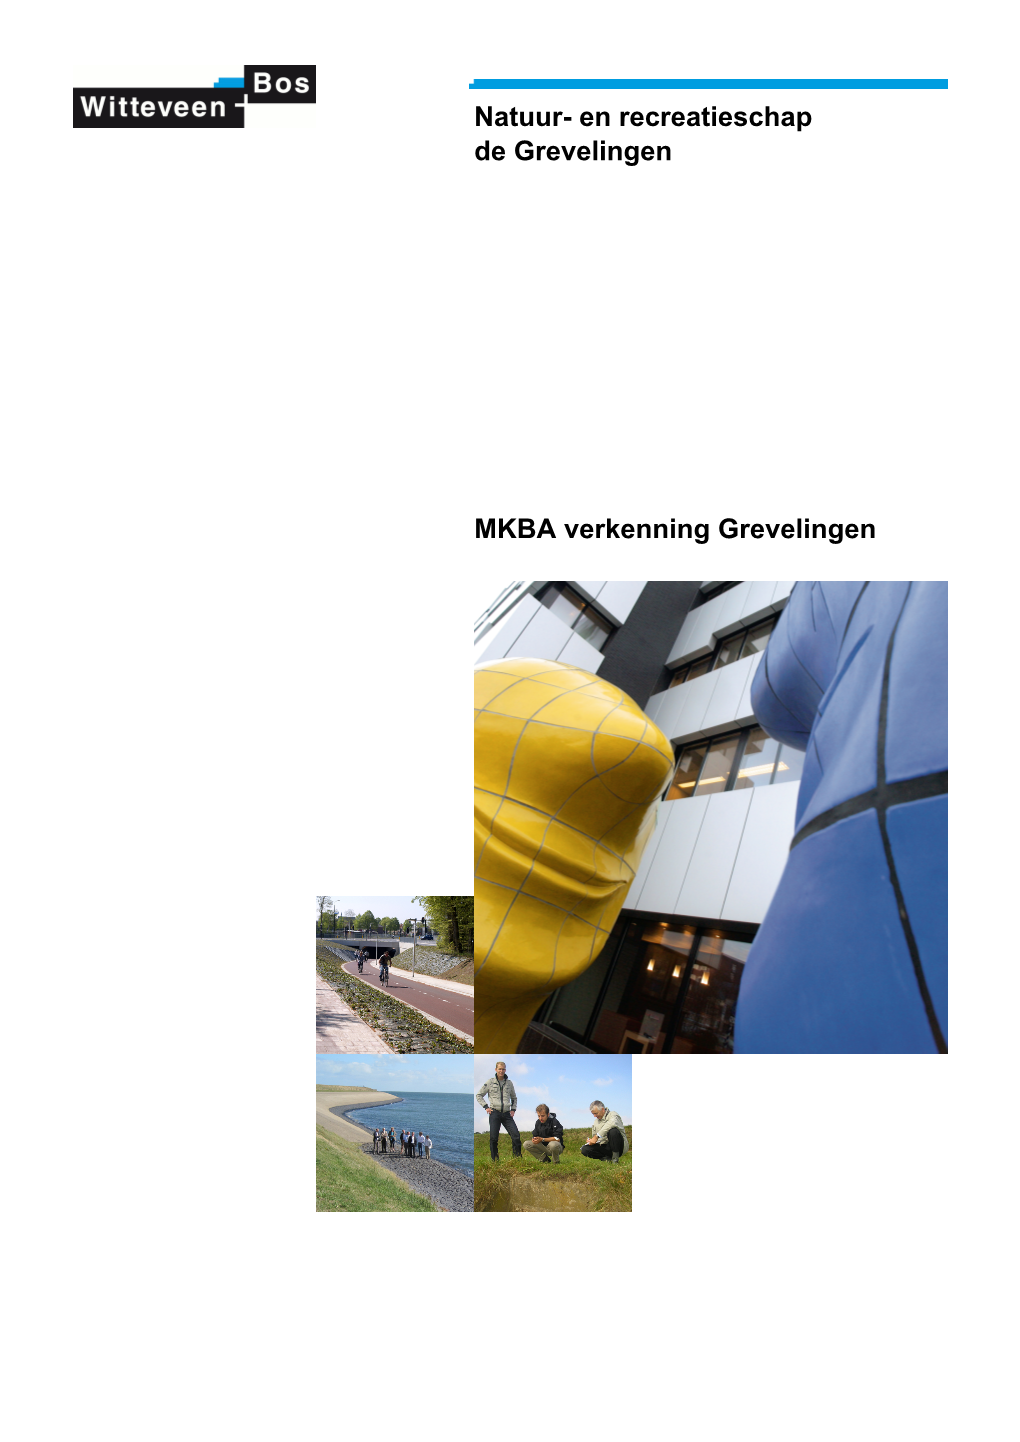 MKBA Verkenning Grevelingen, Witteveen En